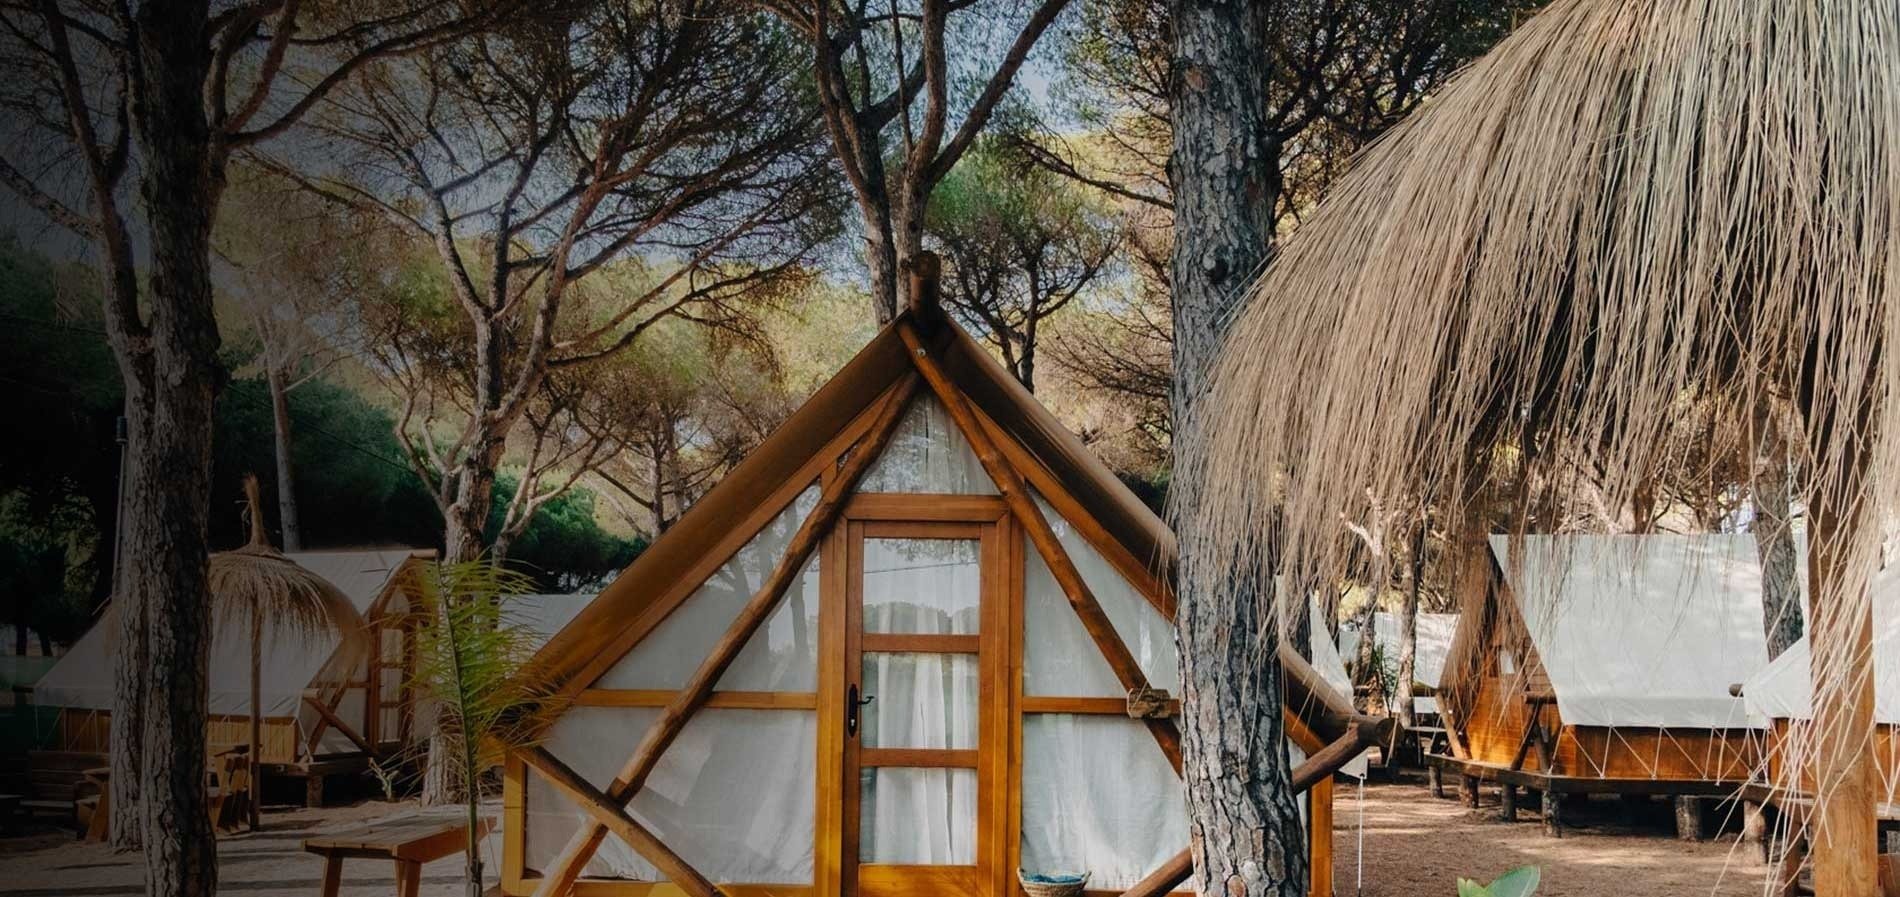 une tente en bois est entourée d' arbres dans une forêt